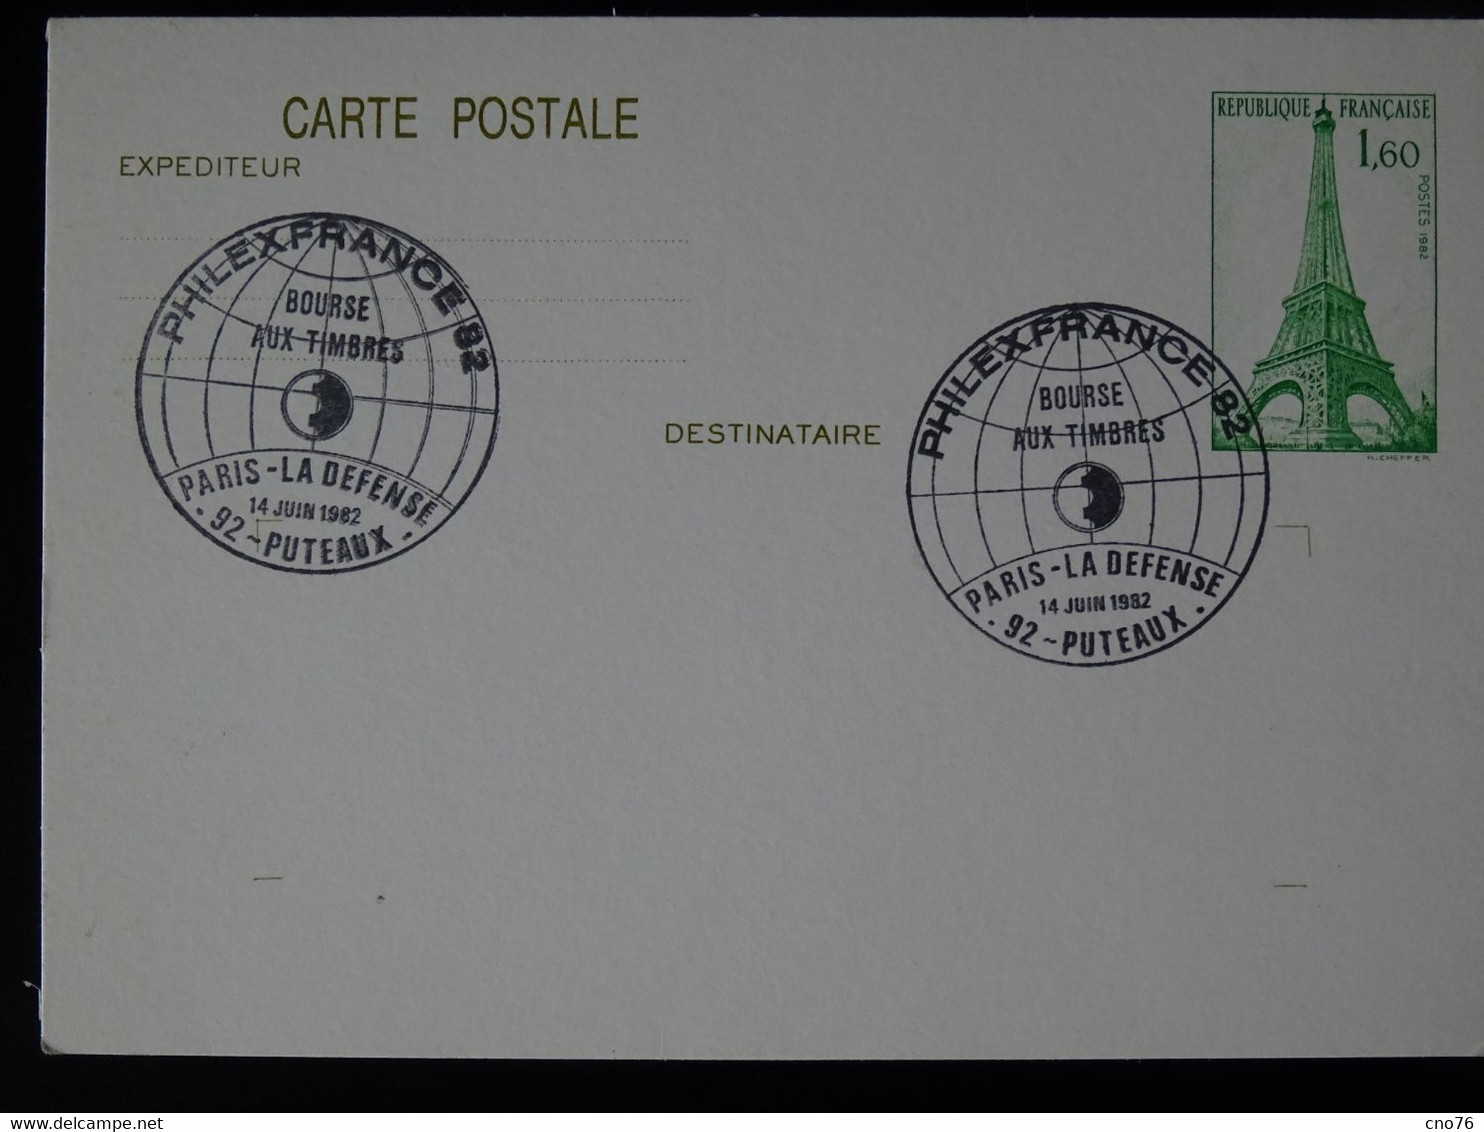 Ensemble De 4 Cartes Postales Prêt à Poster (JUVA ROUEN 76, Philex France 82...) - Verzamelingen En Reeksen: PAP